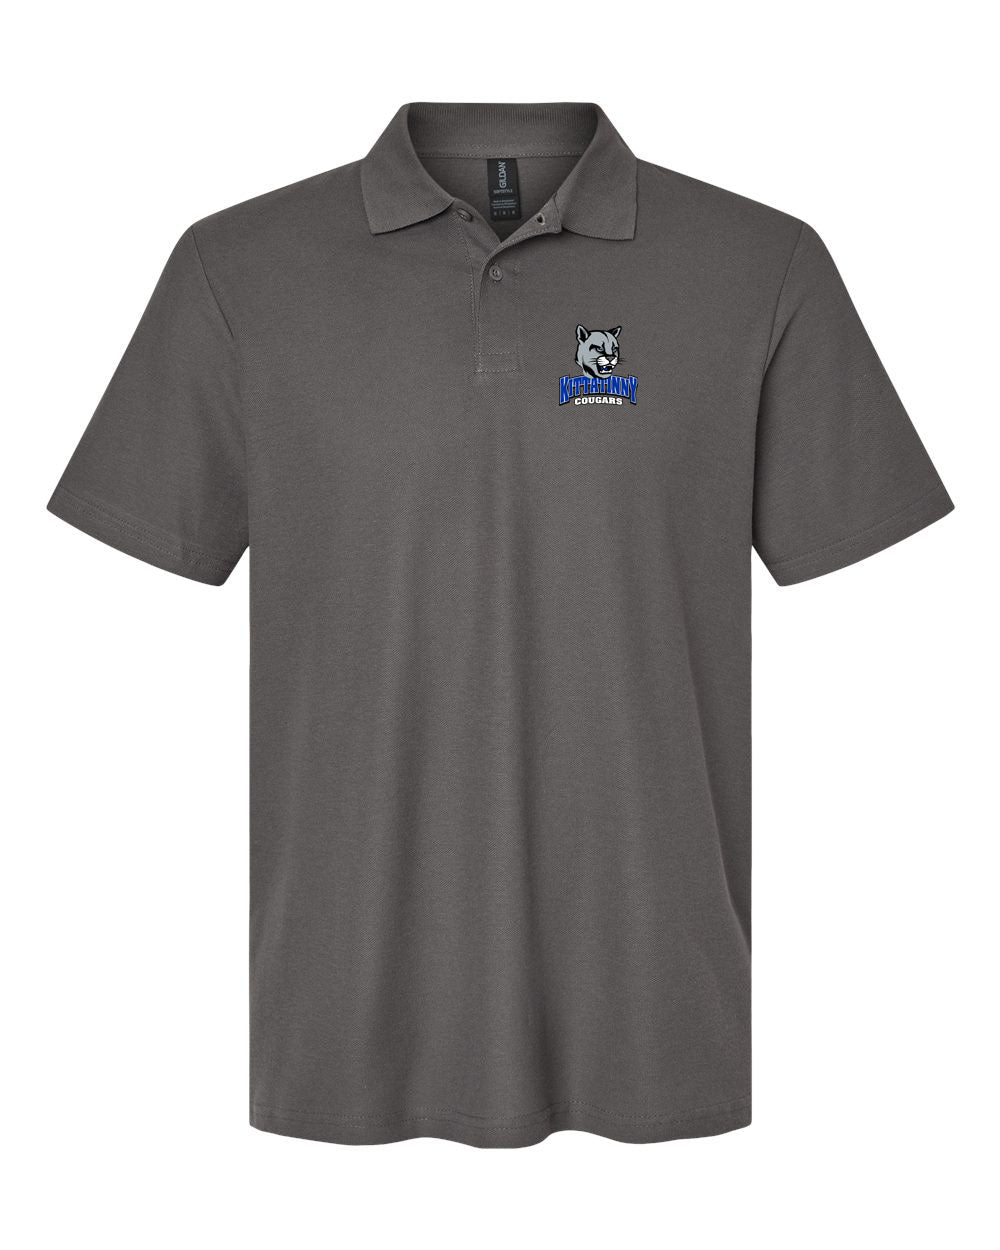 KRHS Design 20 Polo T-Shirt